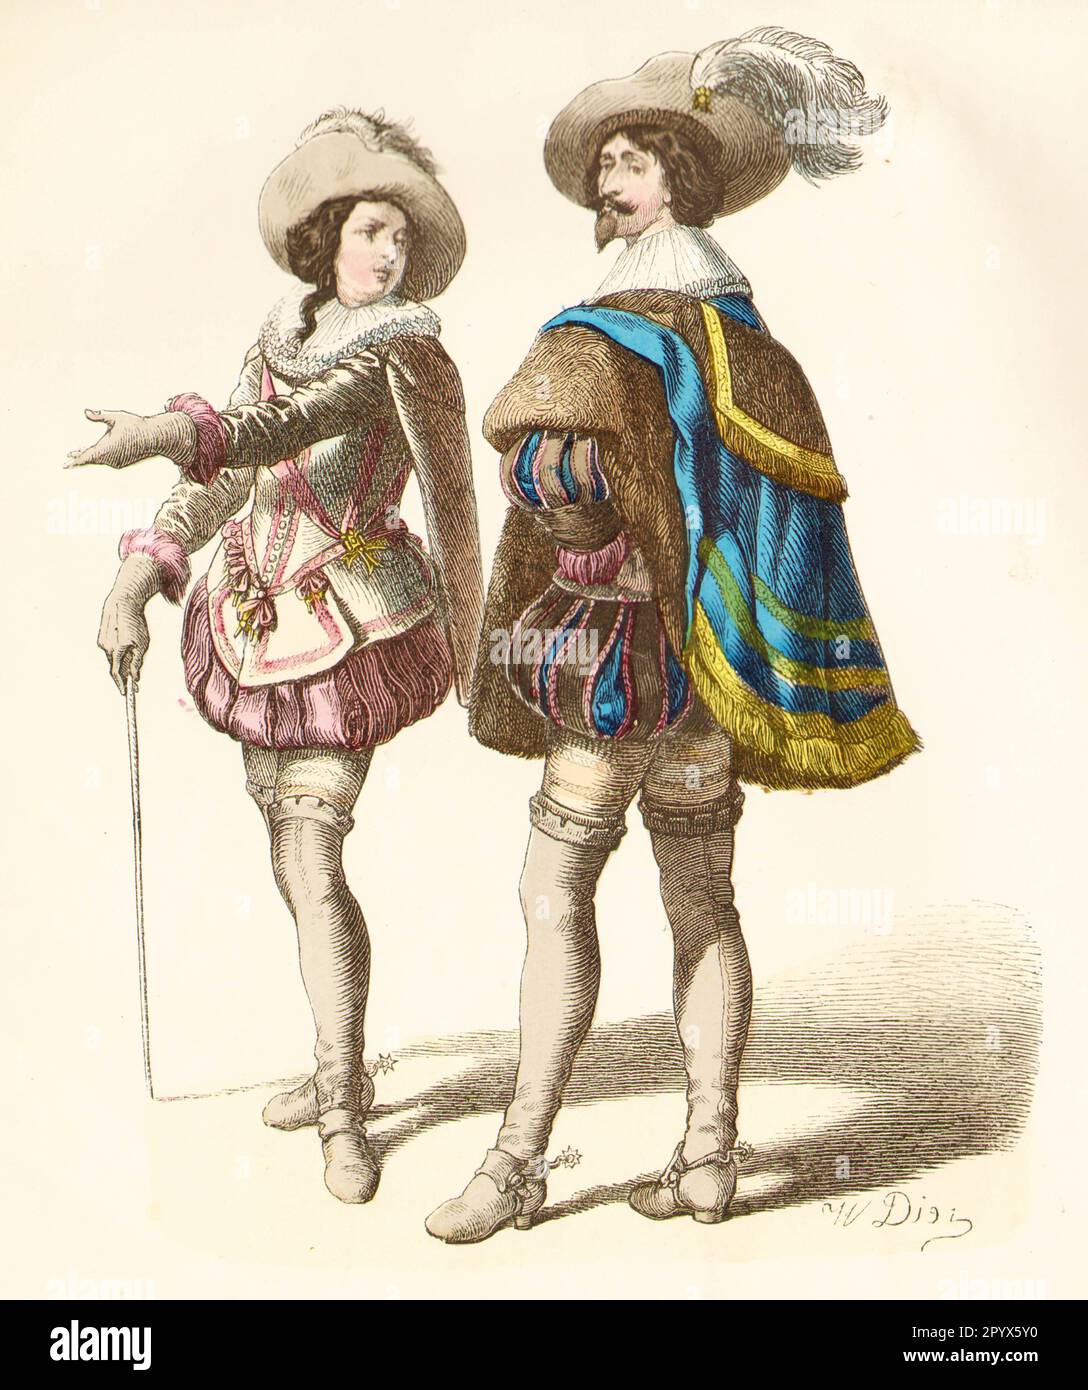 Cavalier Men's Fashion